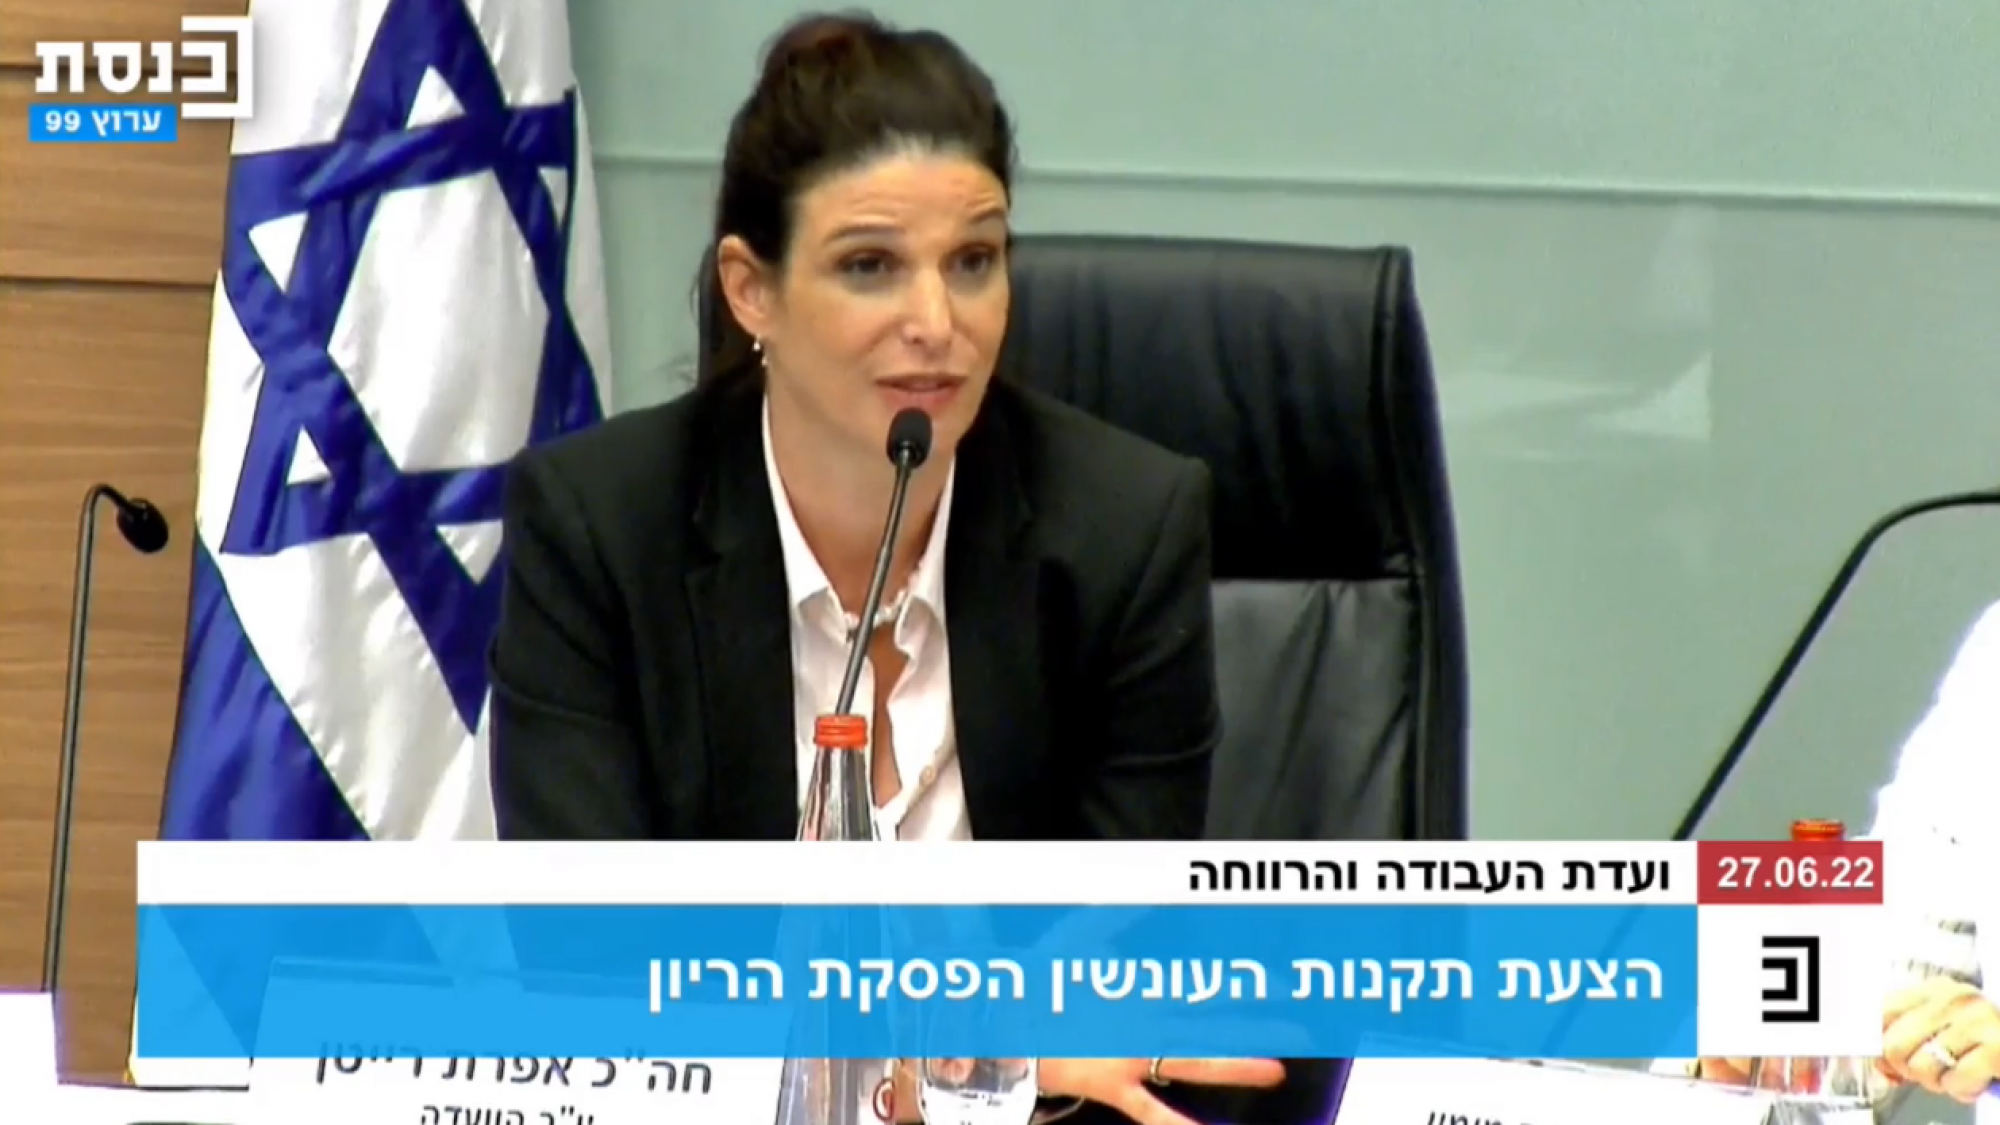 אפרת רייטן בדיון על הקלה בוועדות להפסקת היריון בישראל | צילום מסך: ערוץ הכנסת